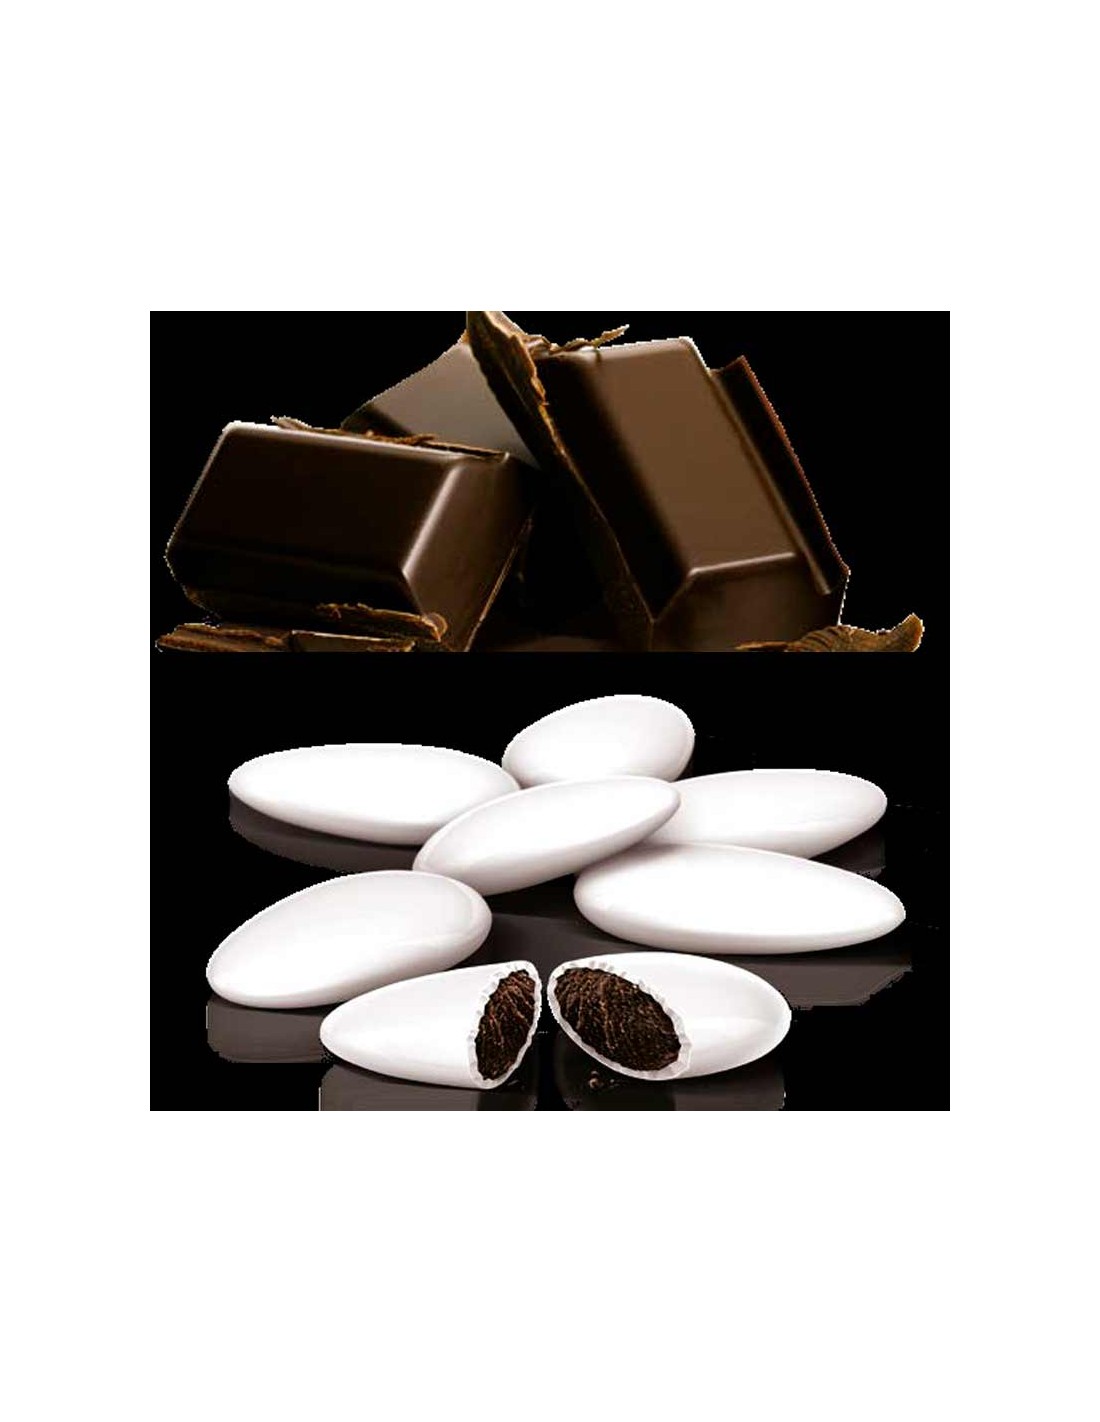 Crispo Confetti bianchi al cioccolato 1 kg